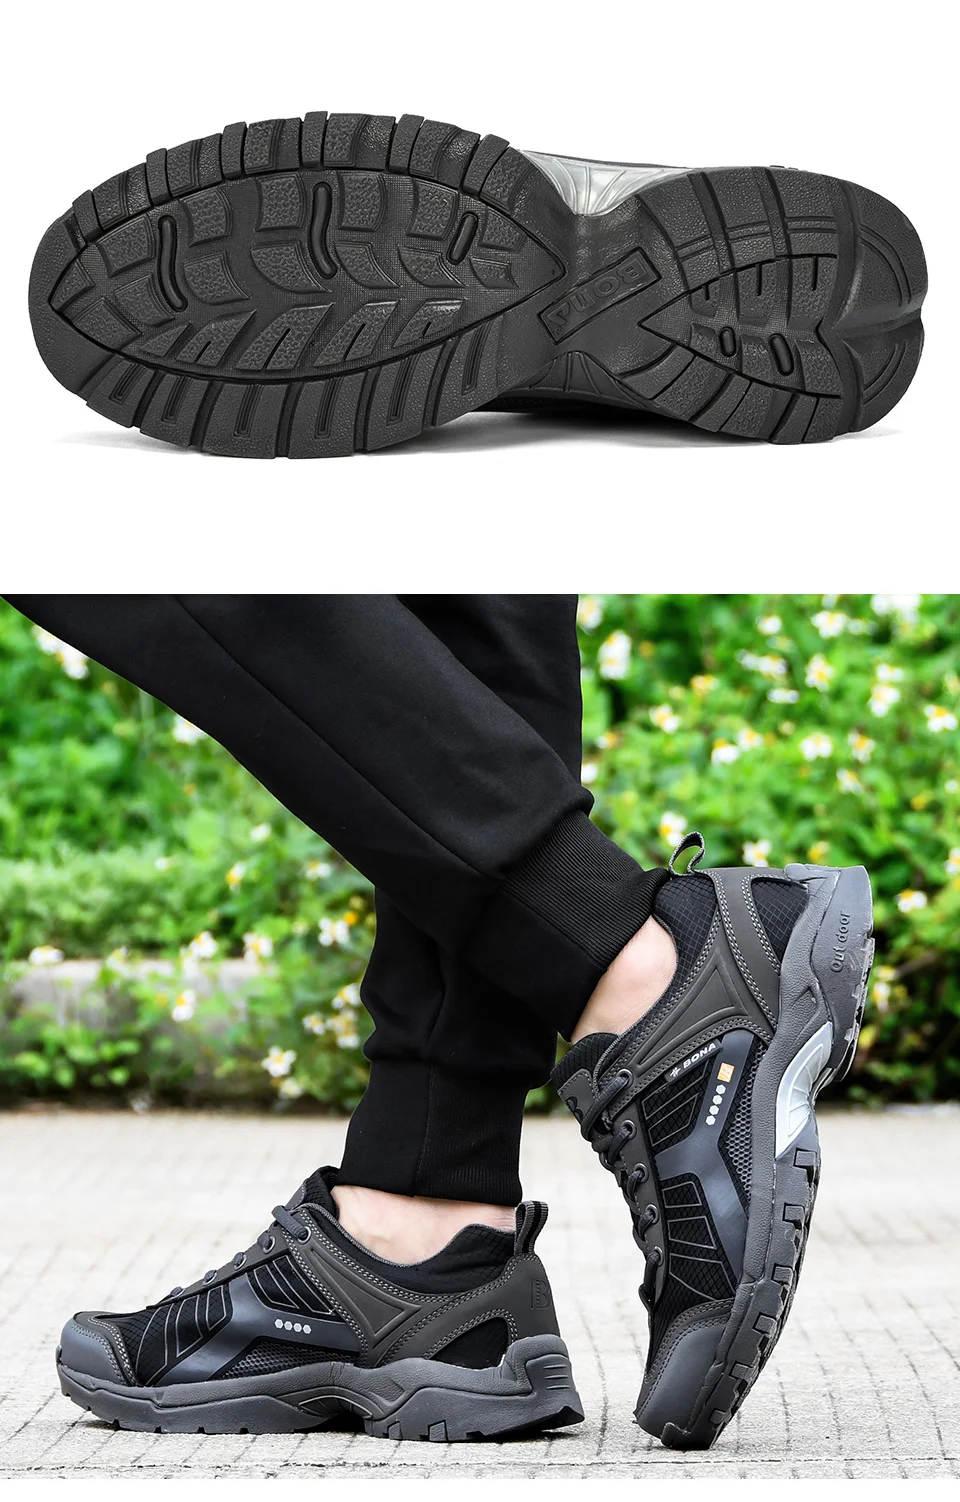 BONA Новое поступление модные Пеший Туризм обувь Для мужчин с низким верхом дышащая обувь для отдыха на открытом воздухе кроссовки, обувь для занятий альпинизмом, большой размер 10,5